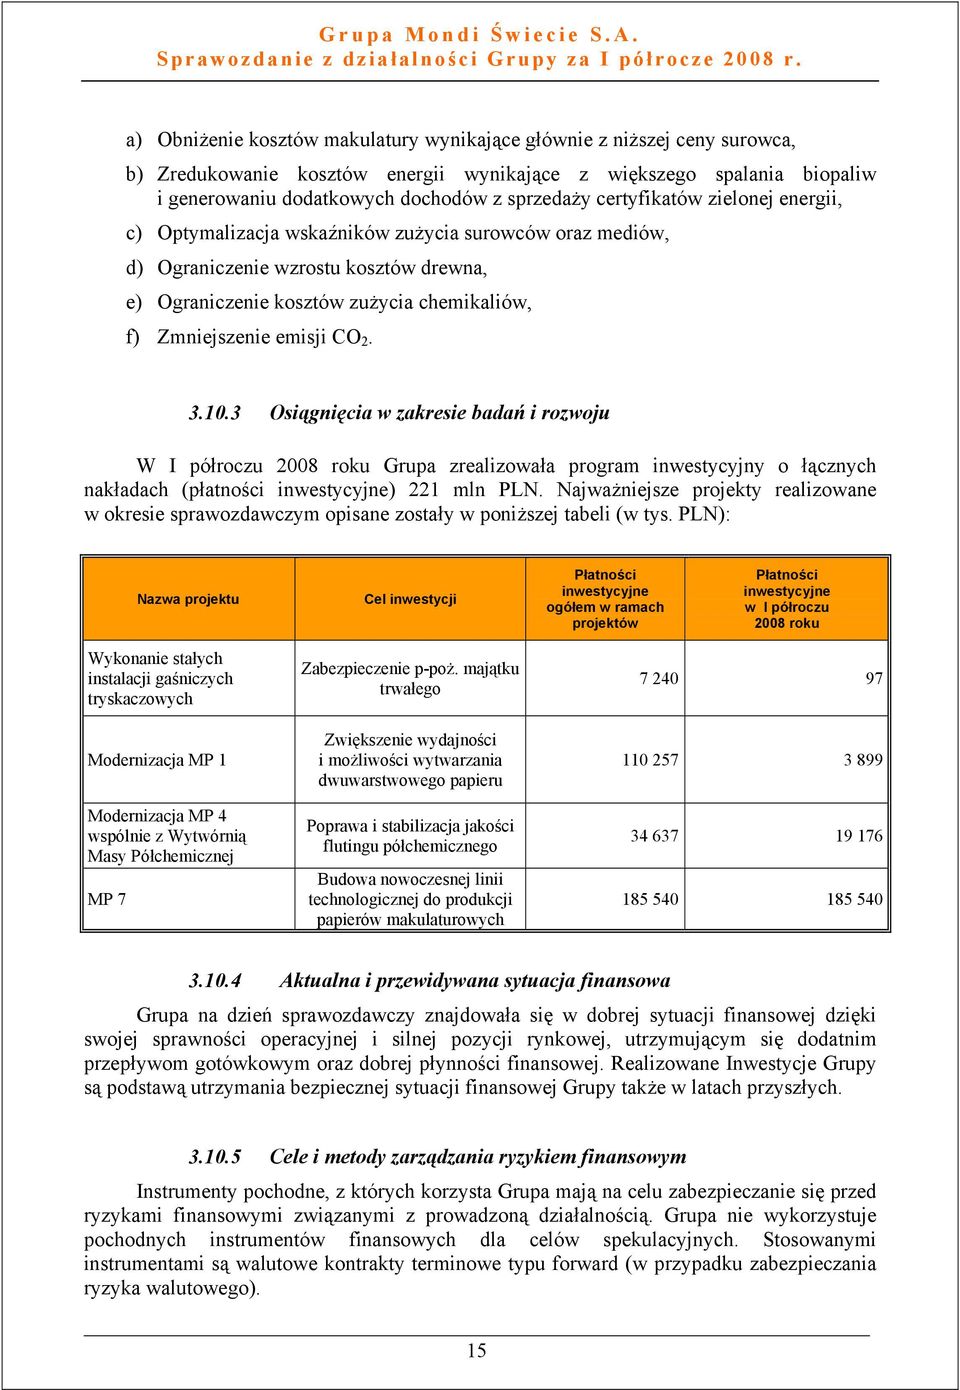 2. 3.10.3 Osiągnięcia w zakresie badań i rozwoju W I półroczu 2008 roku Grupa zrealizowała program inwestycyjny o łącznych nakładach (płatności inwestycyjne) 221 mln PLN.